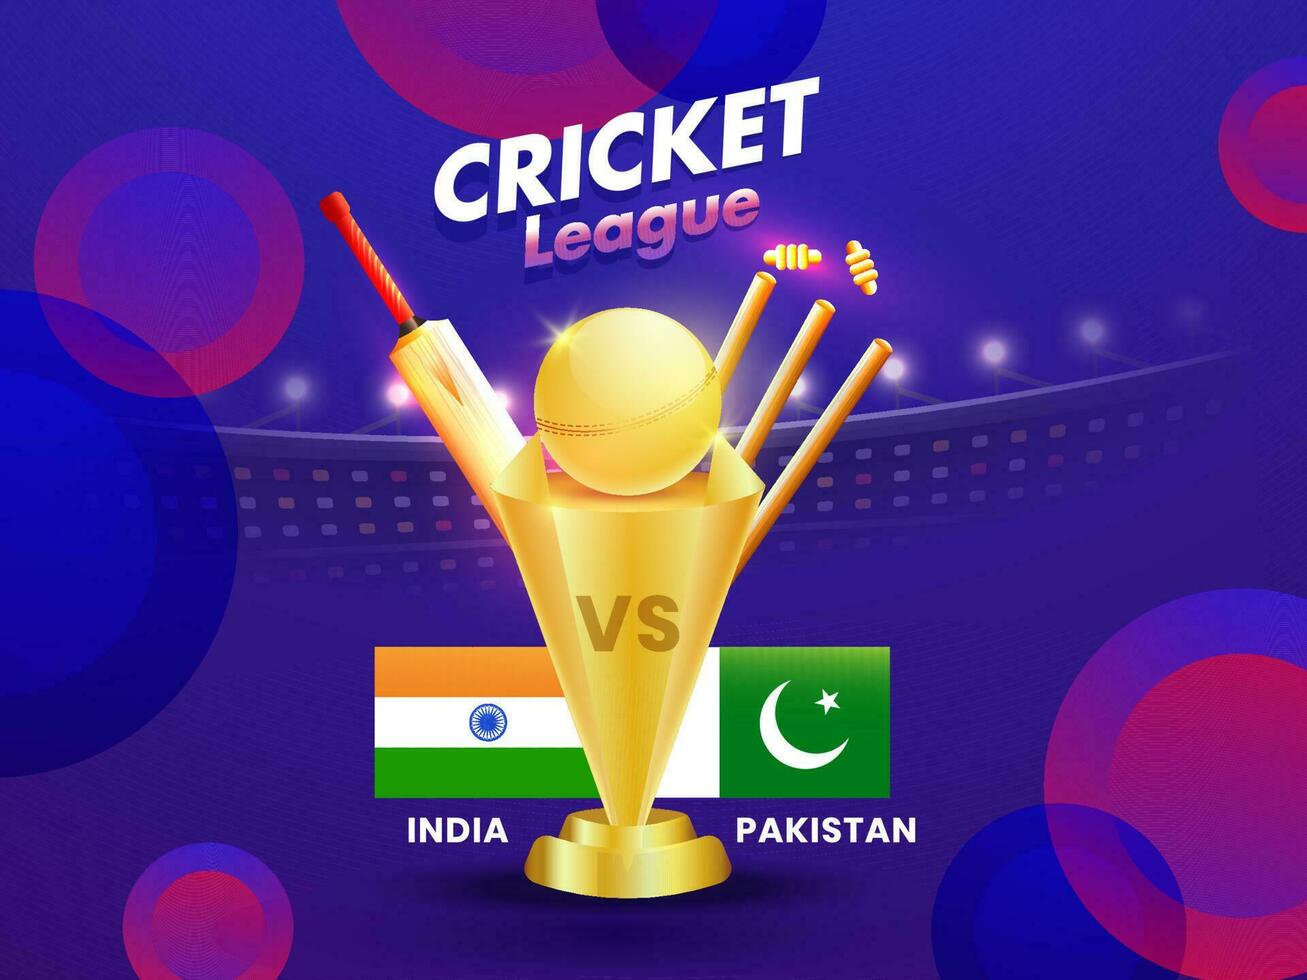 krekel liga poster of banier ontwerp met krekel uitrusting en kampioenschap trofee van deelnemers teams Indië en Pakistan. vector